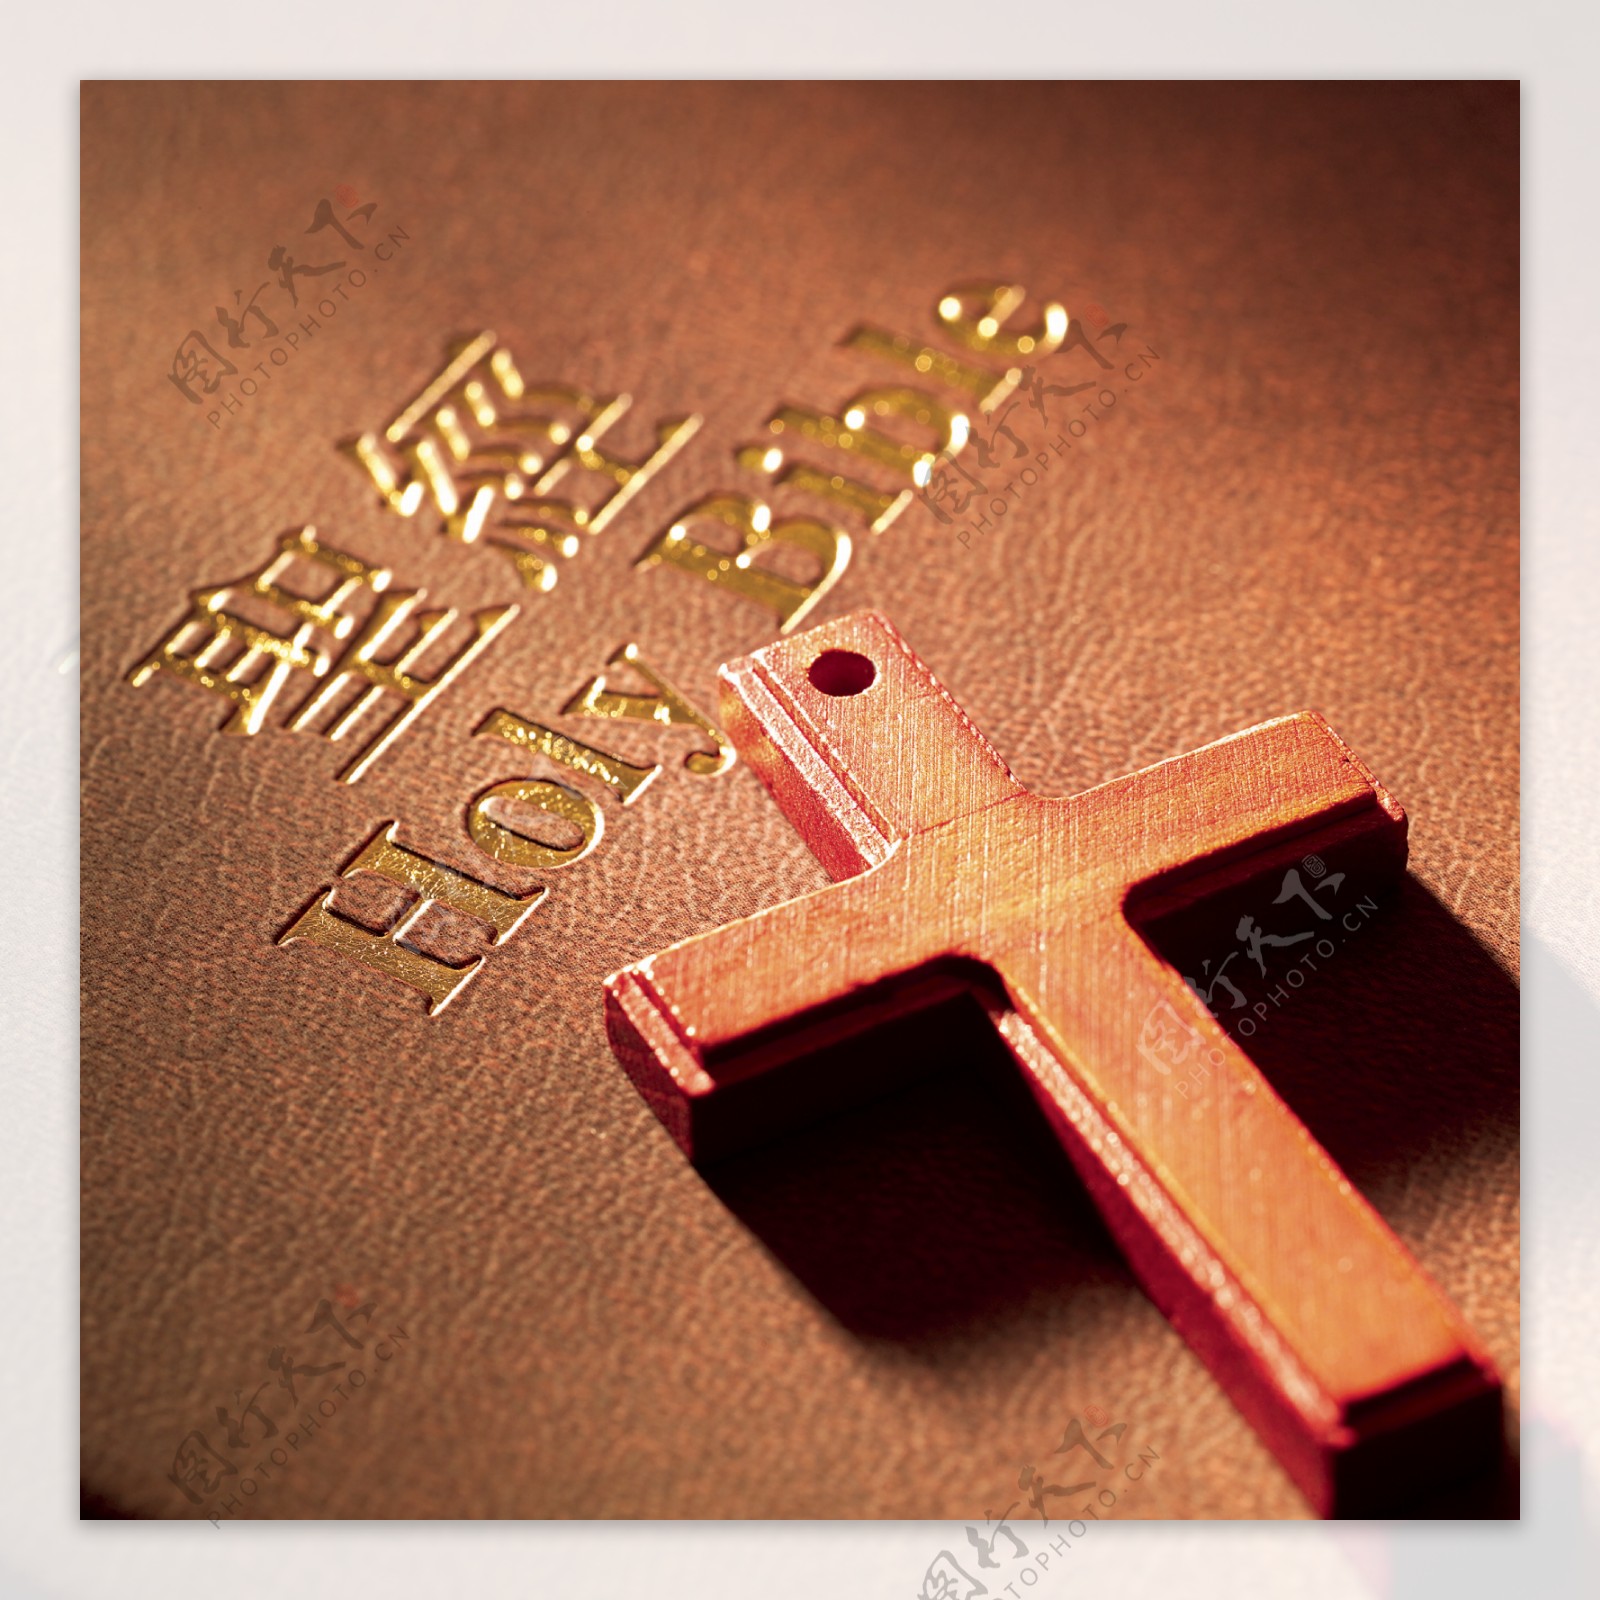 基督教十字架图片大全 基督教十字架图片 - 电影天堂